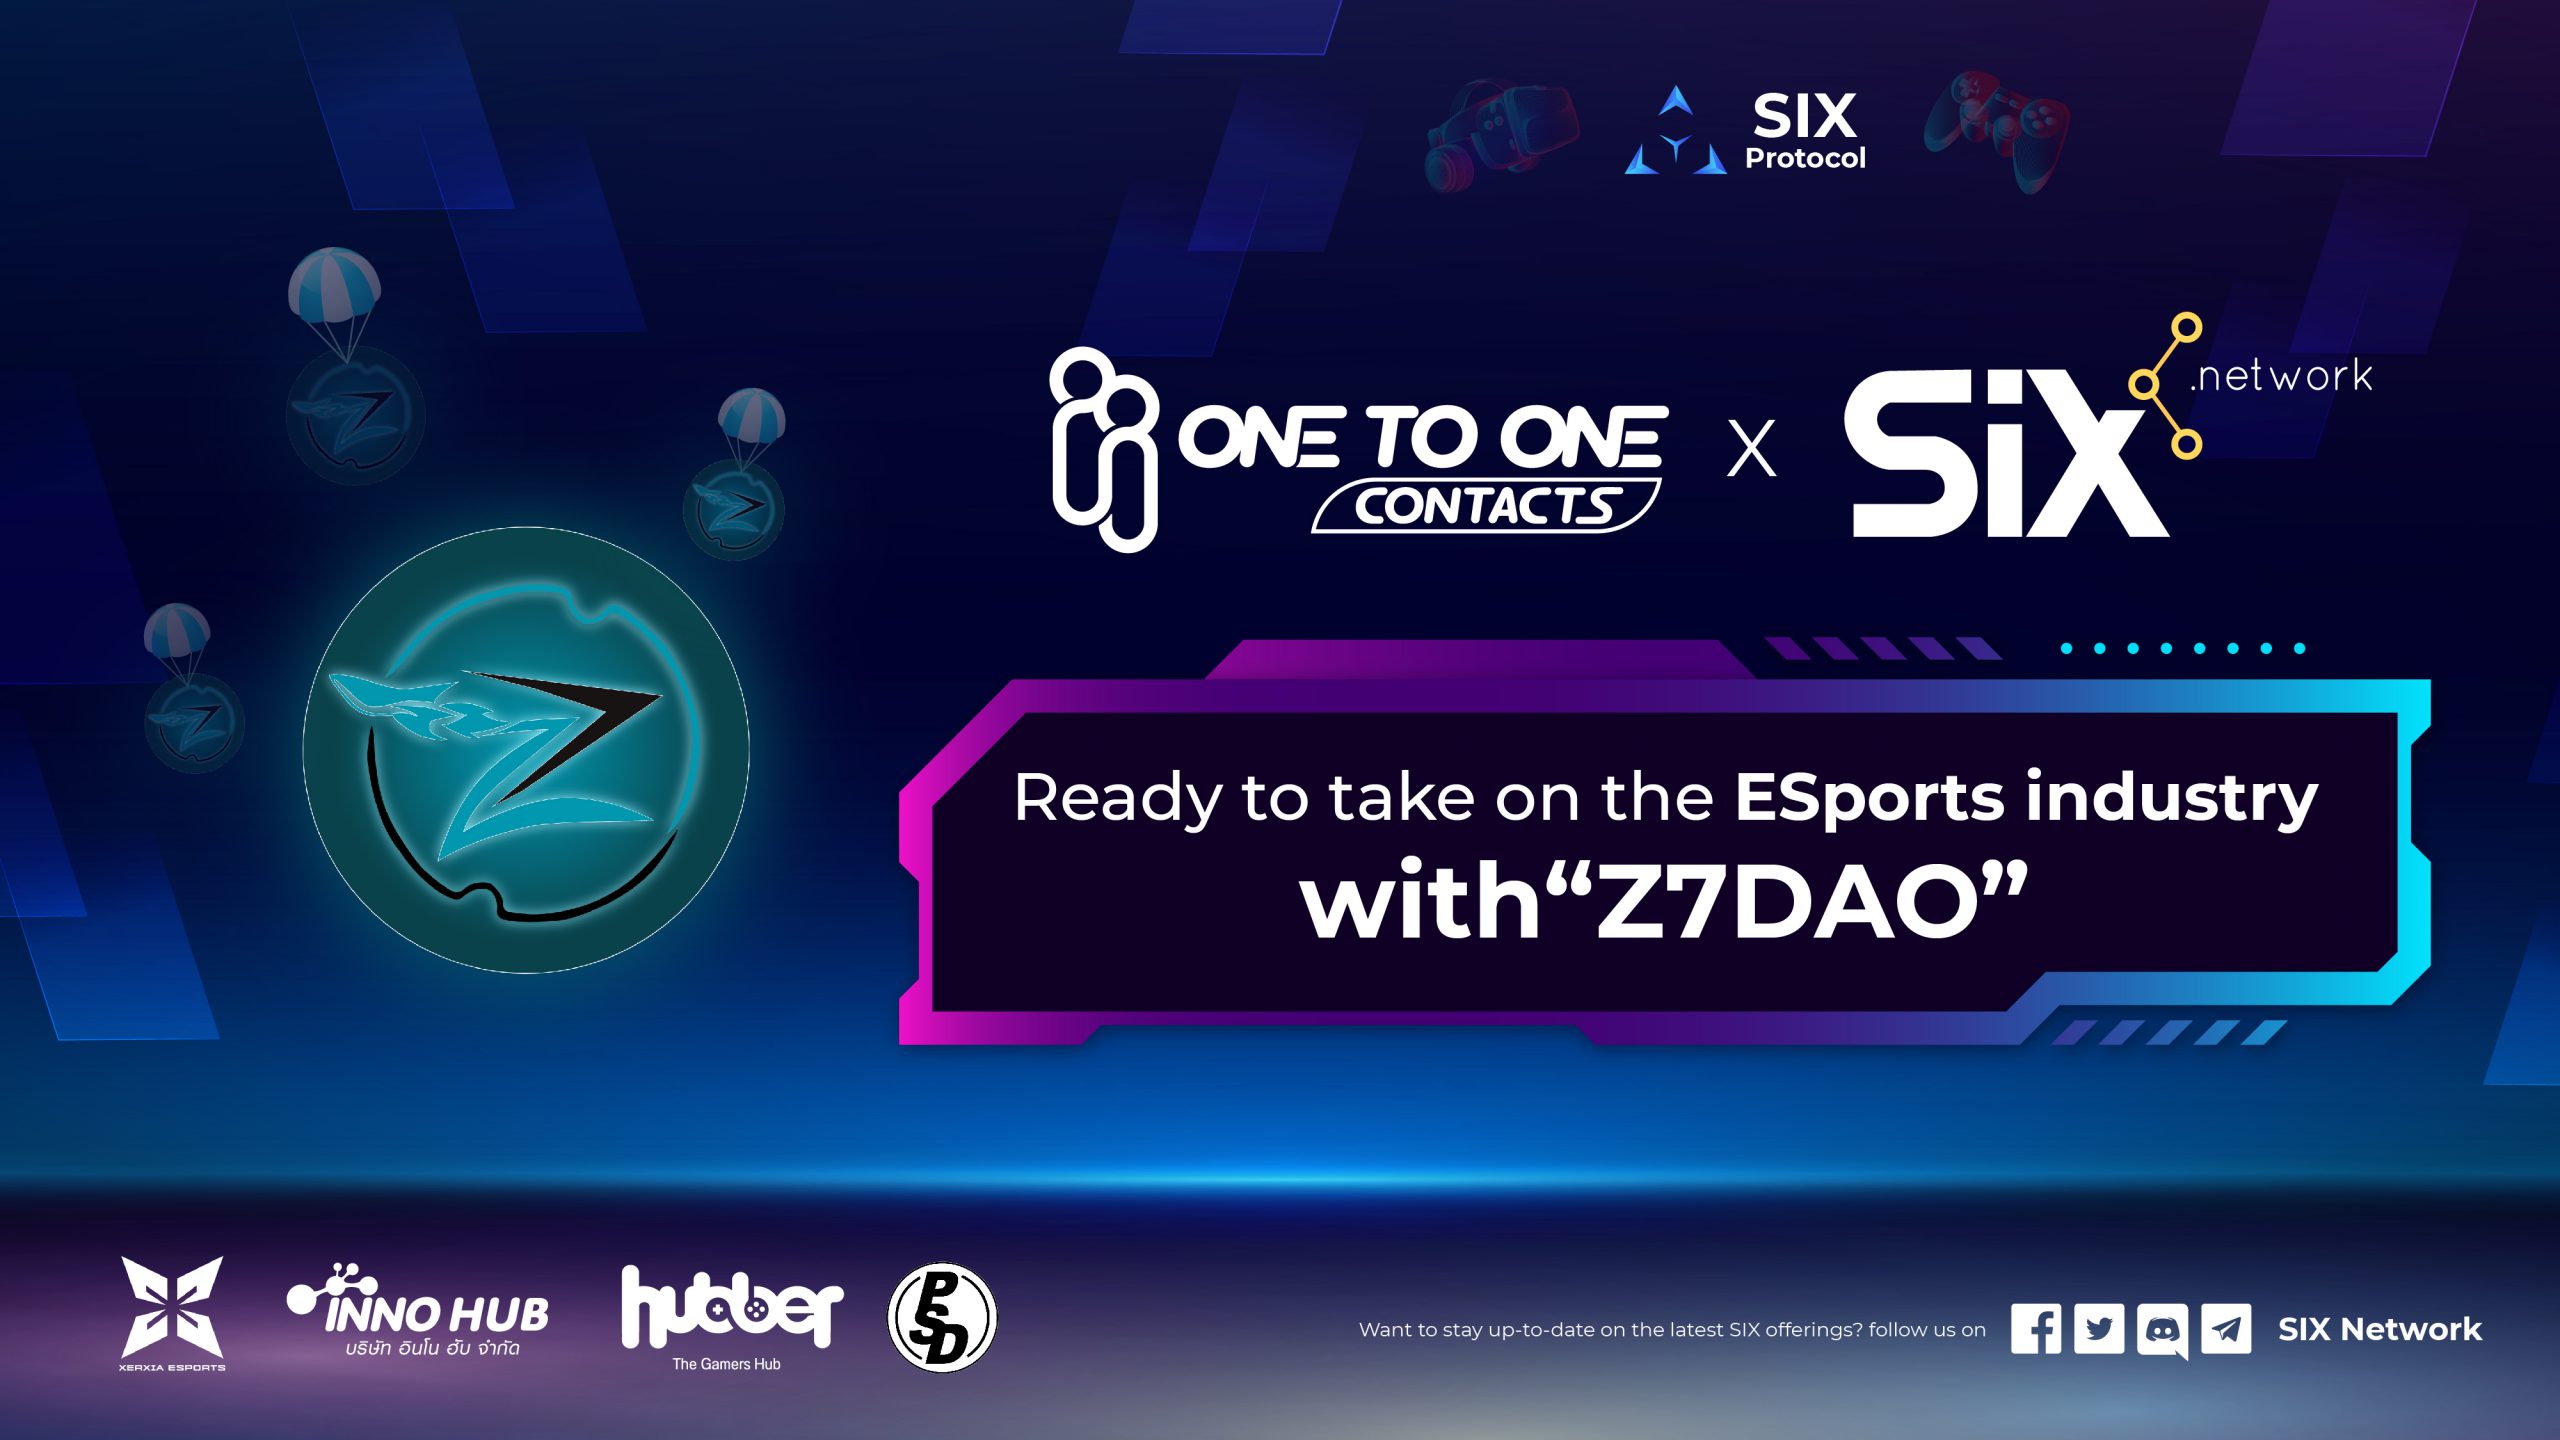 PSD ยานลูก OTO จับมือ SIX Network ปั้นโปรเจกต์ Z7DAO พร้อมขึ้น! แพลตฟอร์ม “Esports team”  เชื่อมโยง Community นักเล่นเกม เปิดตัวอย่างเป็นทางการ 22 กรกฏาคม 2565 นี้